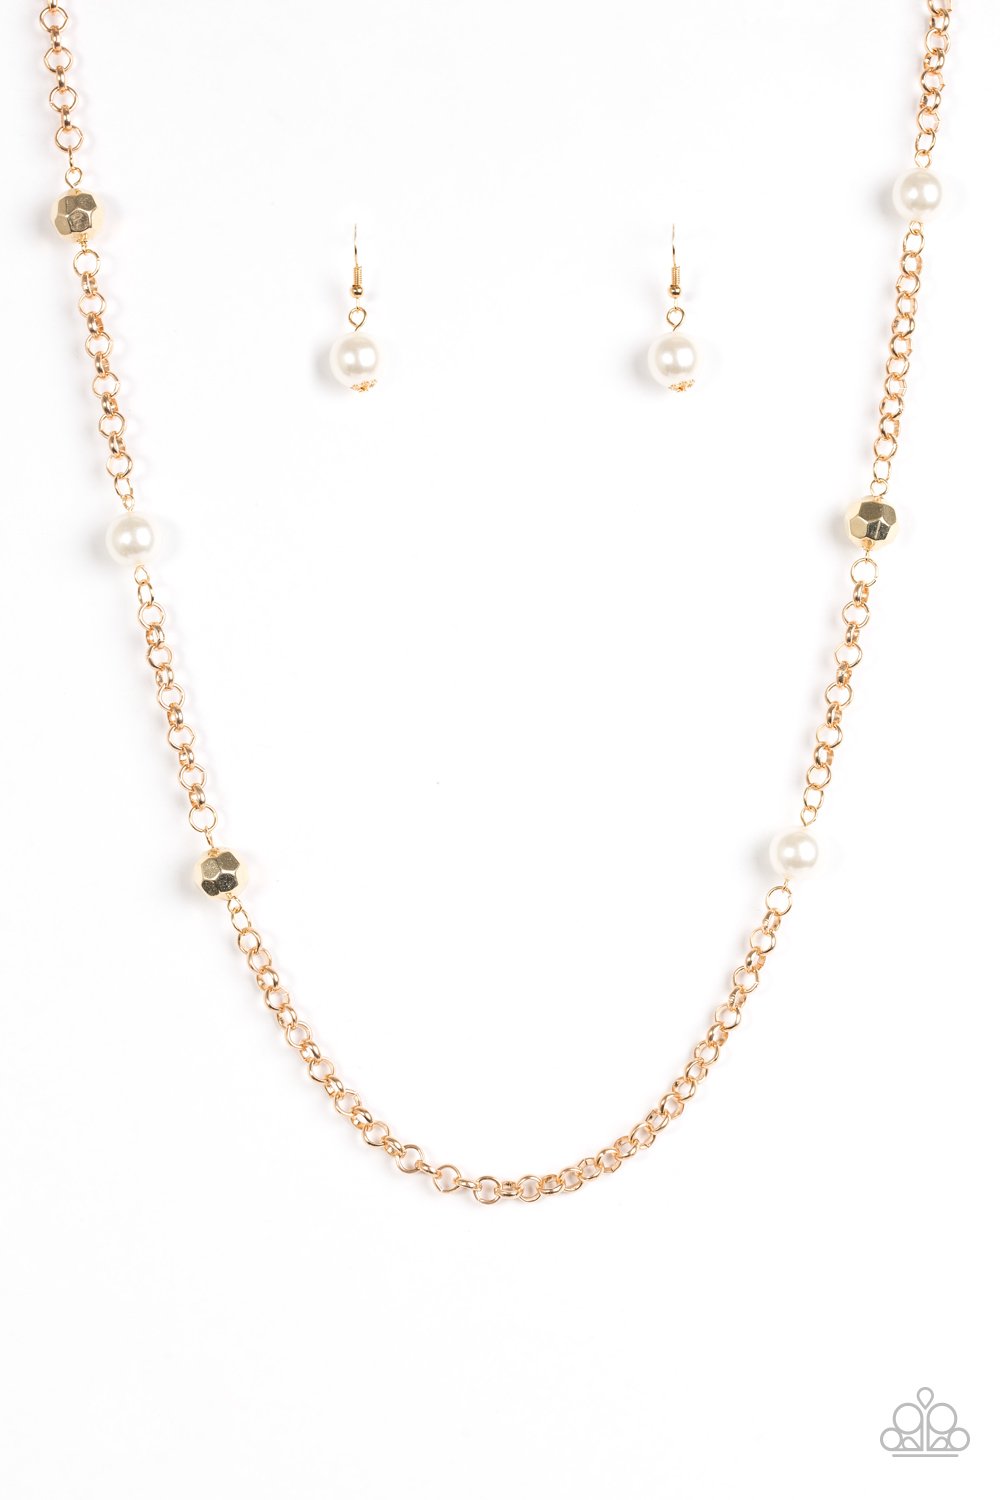 Showroom Shimmer - Gold necklace